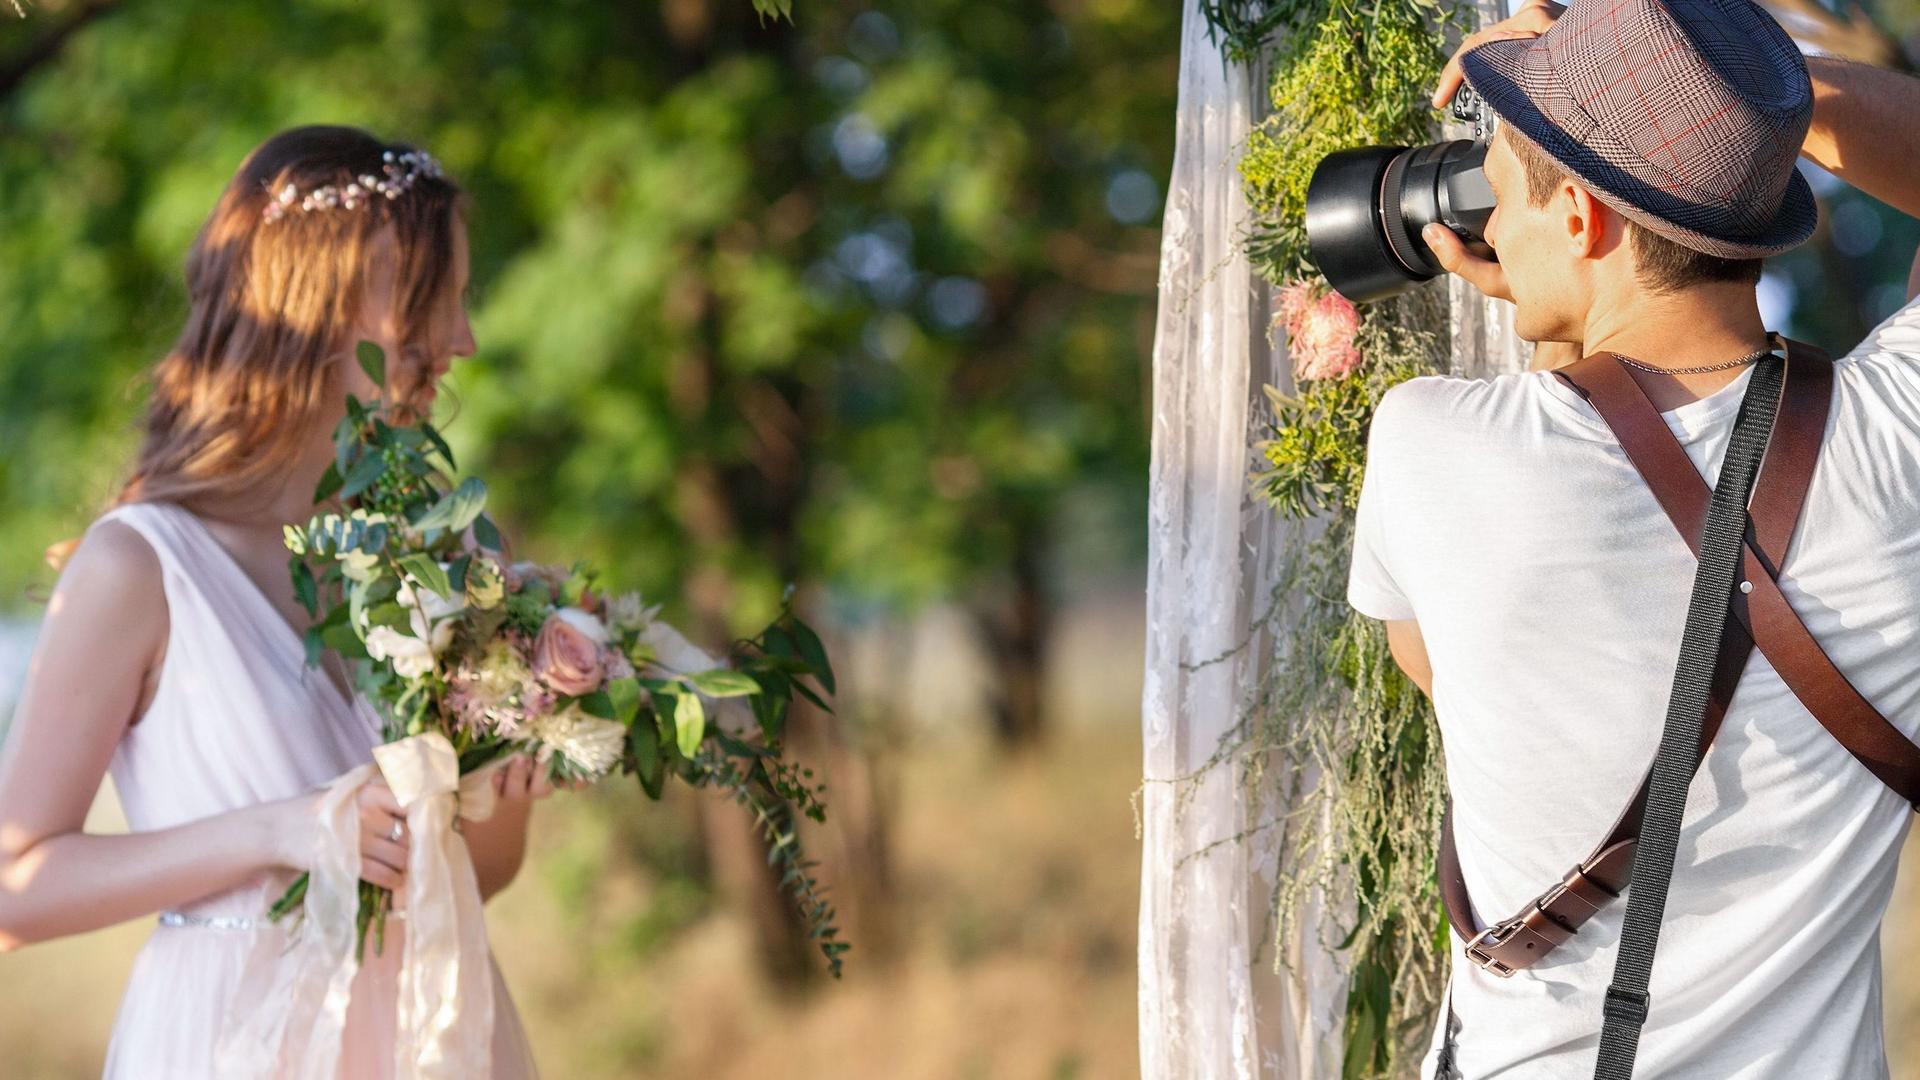 Hochzeitsfotograf macht Portraitaufnahmen der Braut im Freien